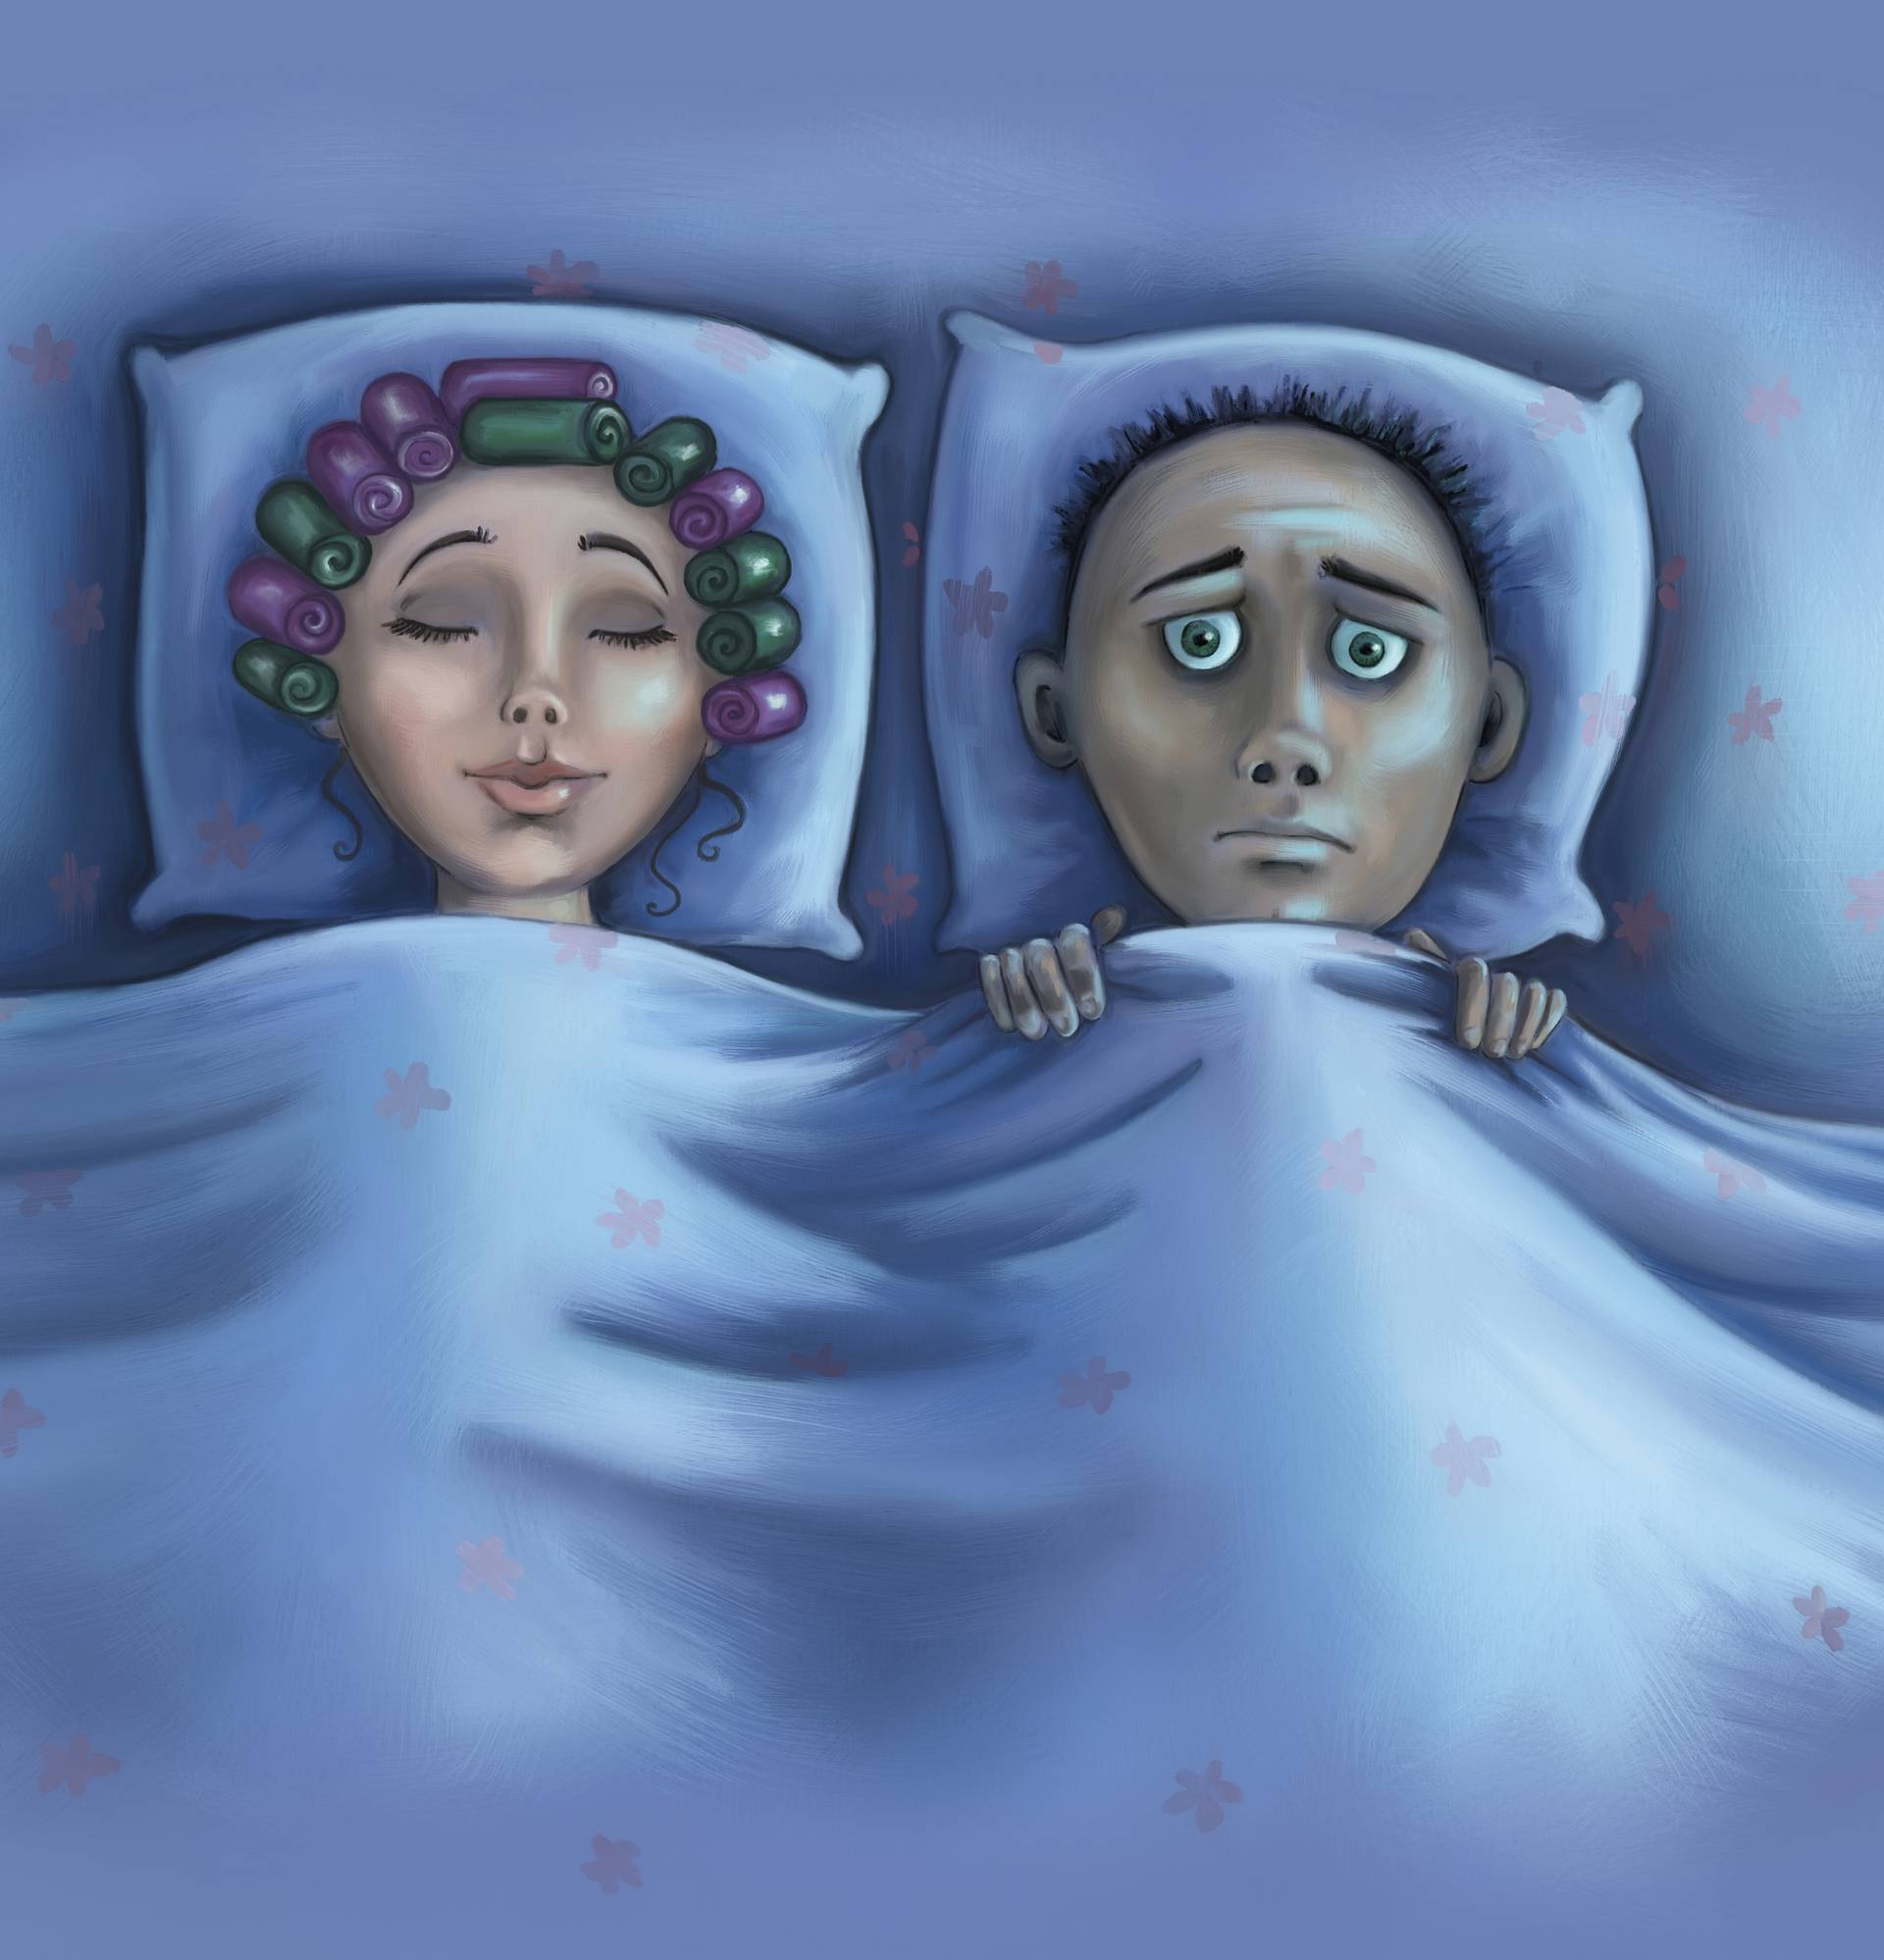 9 vrlo čudnih stvari koje naše tijelo radi kad utonemo u san